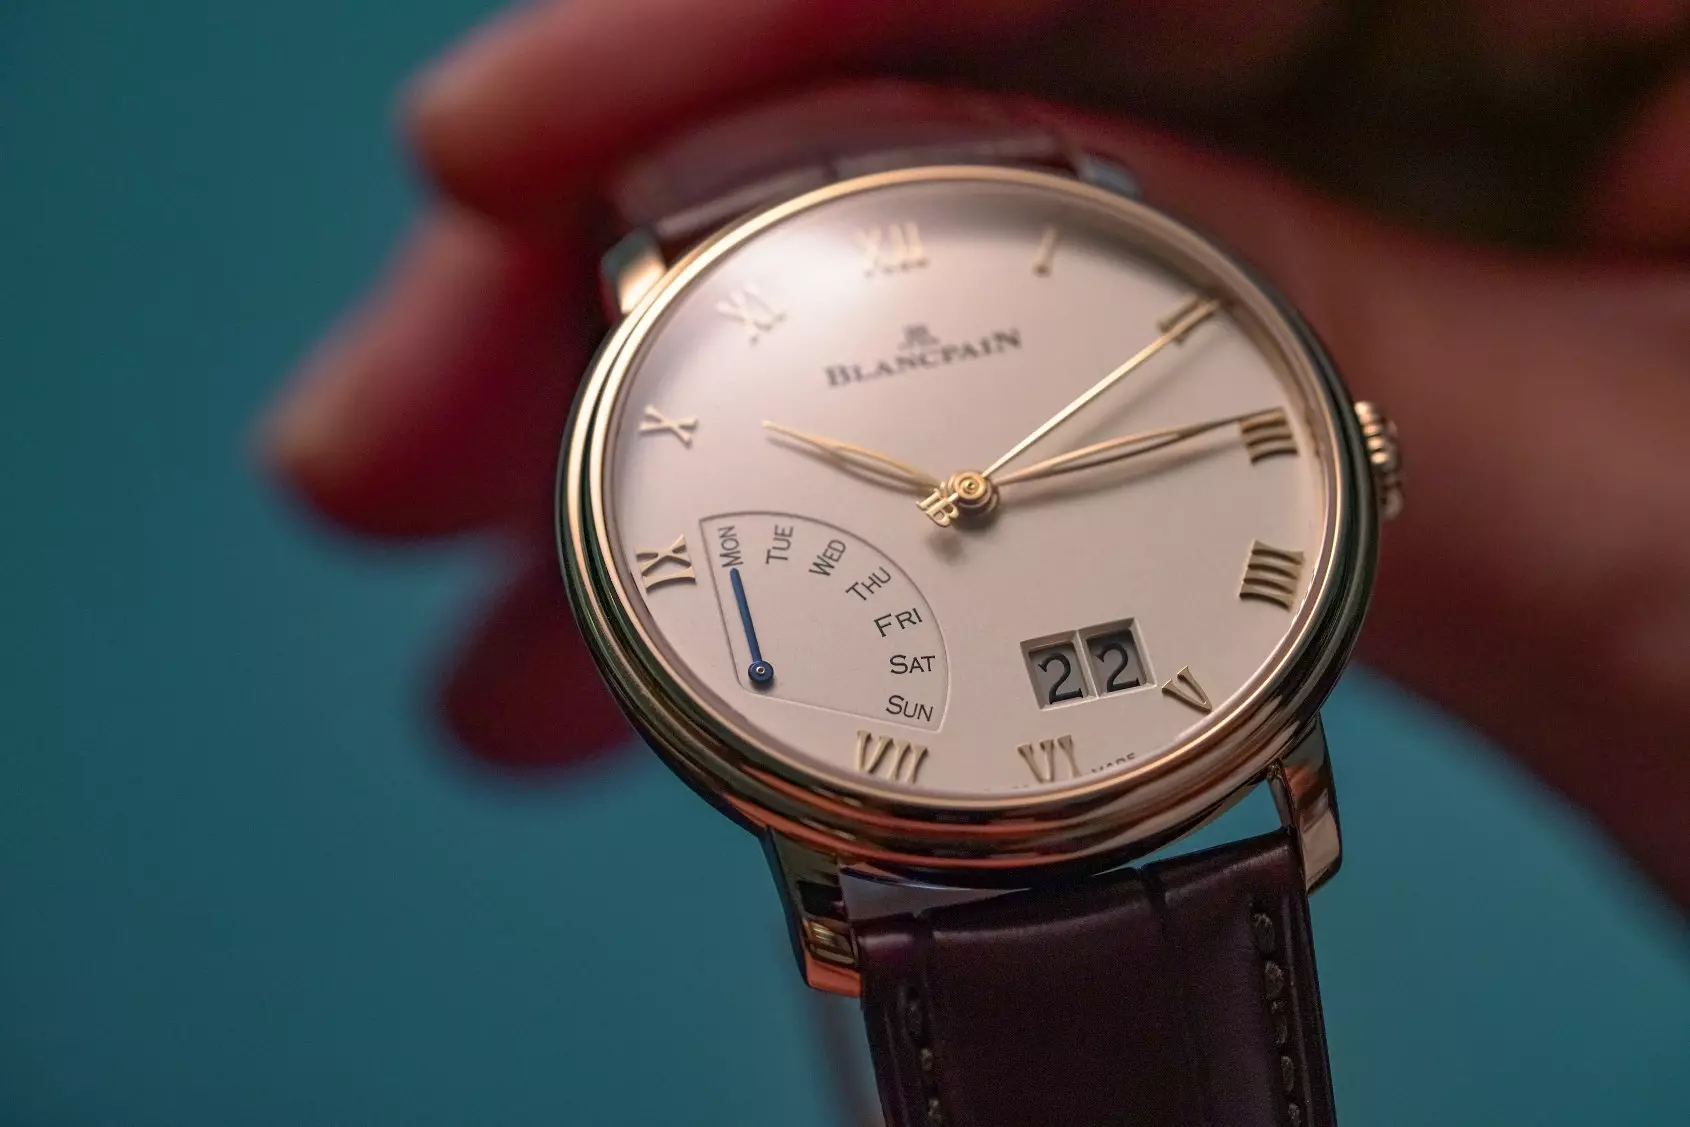 HANDS-ON: L'élégance au quotidien - la Blancpain Villeret Grande Date Jour Rétrograde - Time and Tide Watches